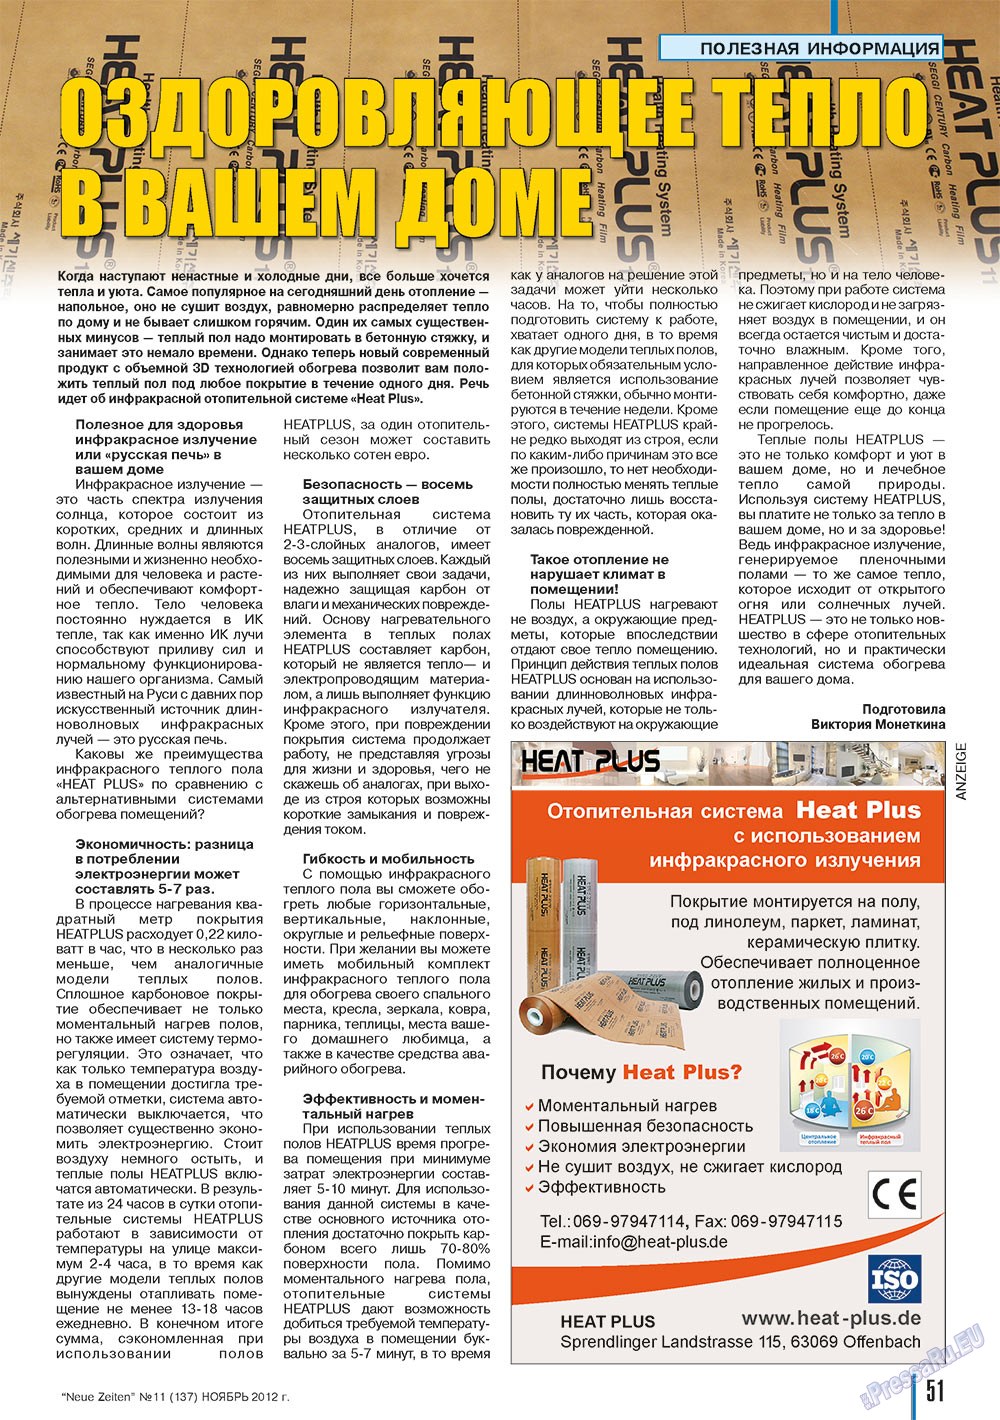 Neue Zeiten, журнал. 2012 №11 стр.51